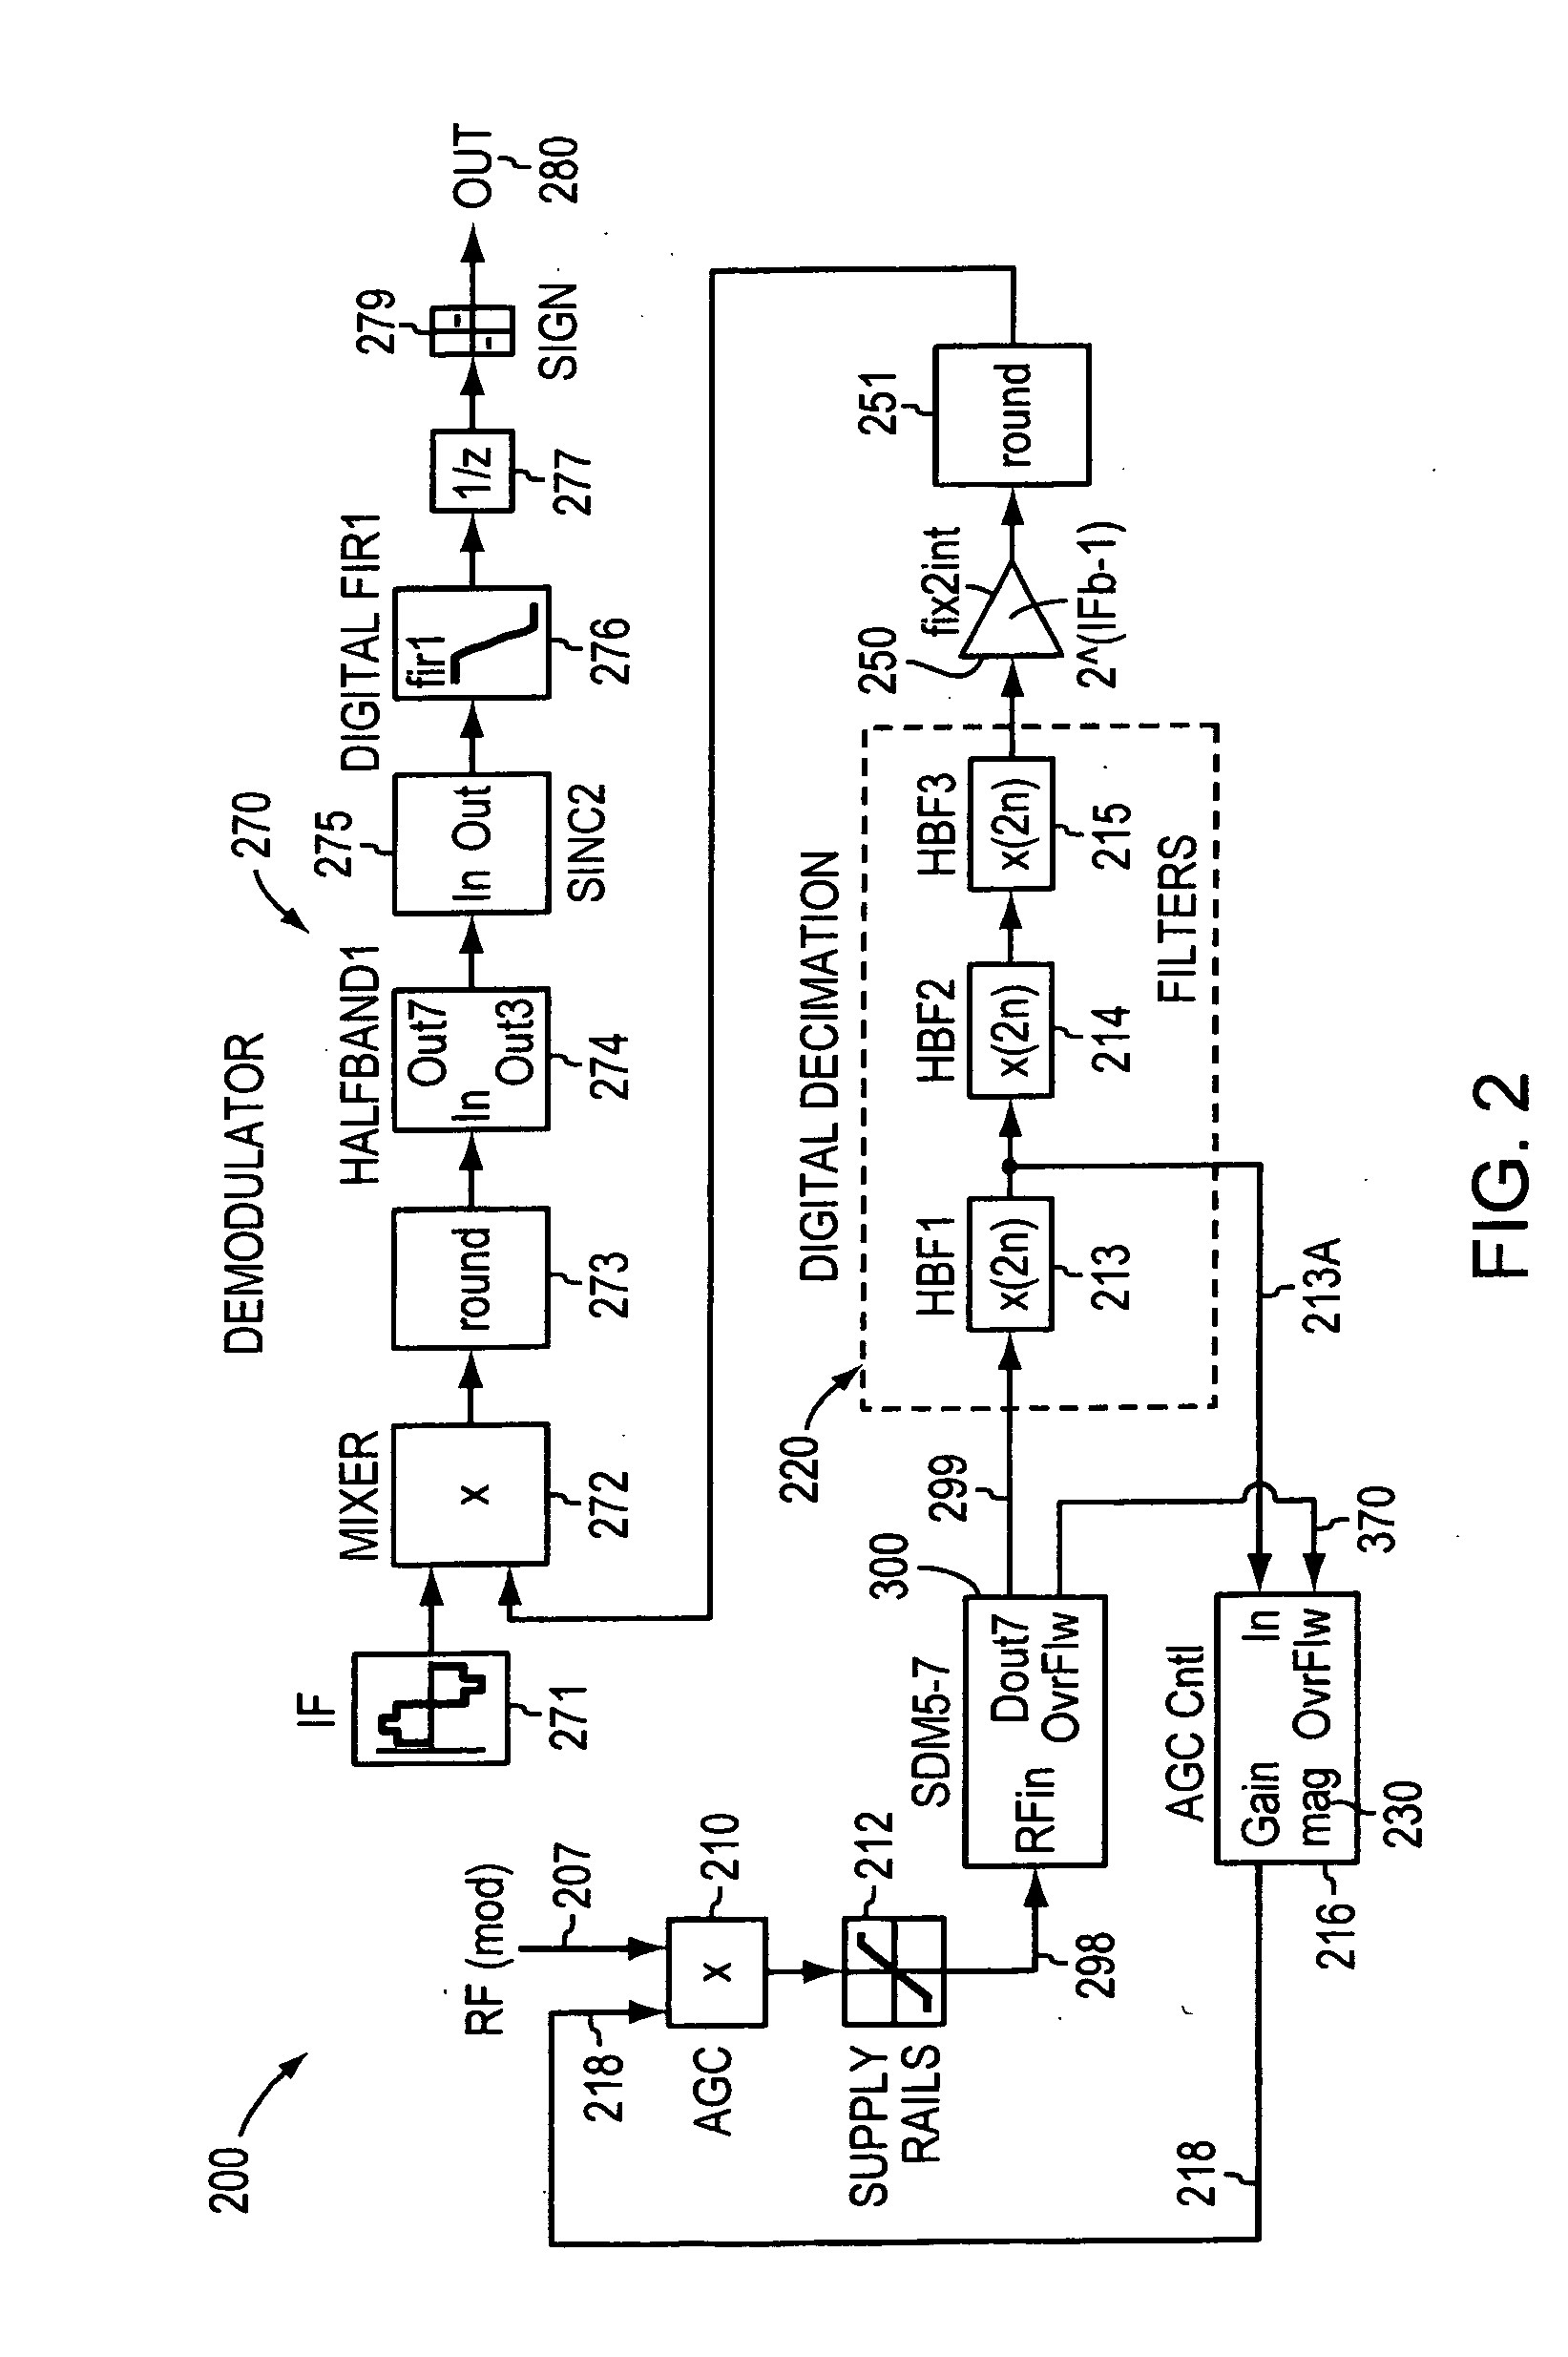 Hybrid heterodyne transmitters and receivers